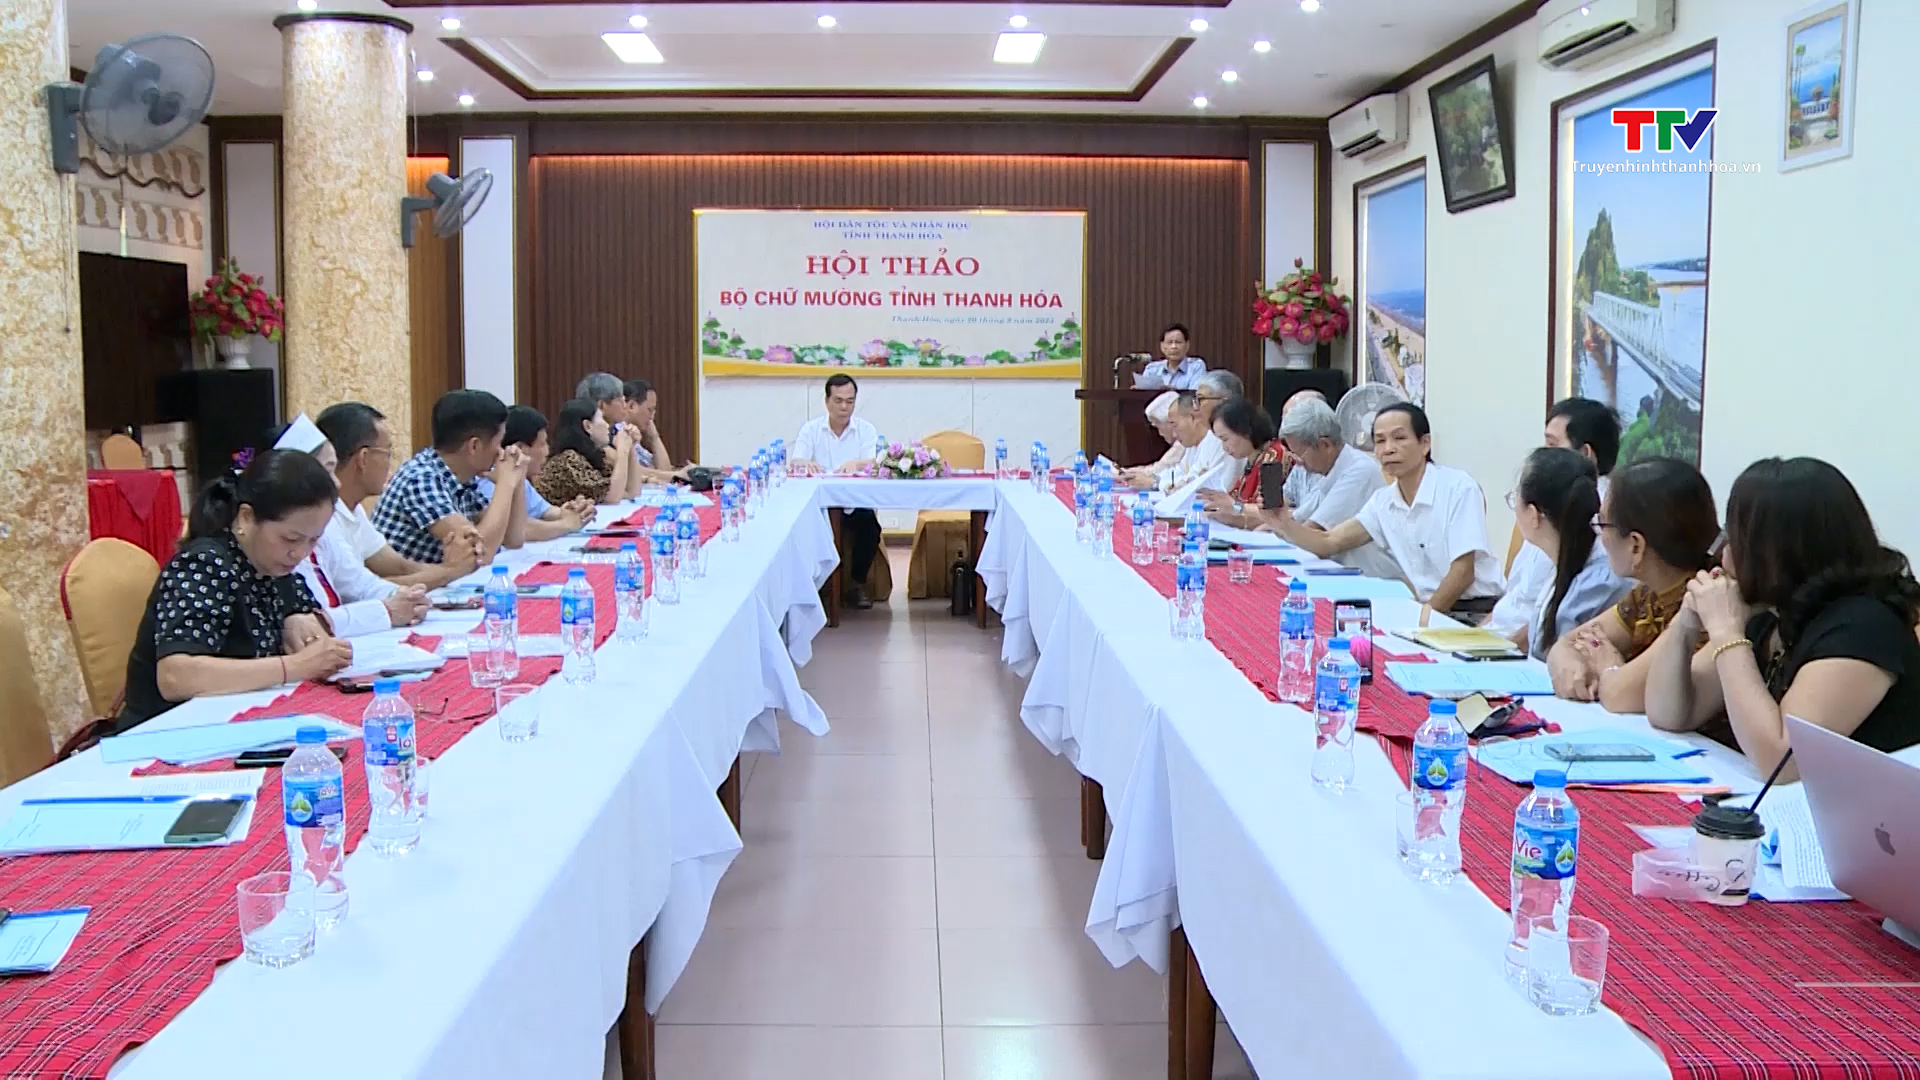 Hội thảo Bộ chữ dân tộc Mường tỉnh Thanh Hóa - Ảnh 2.